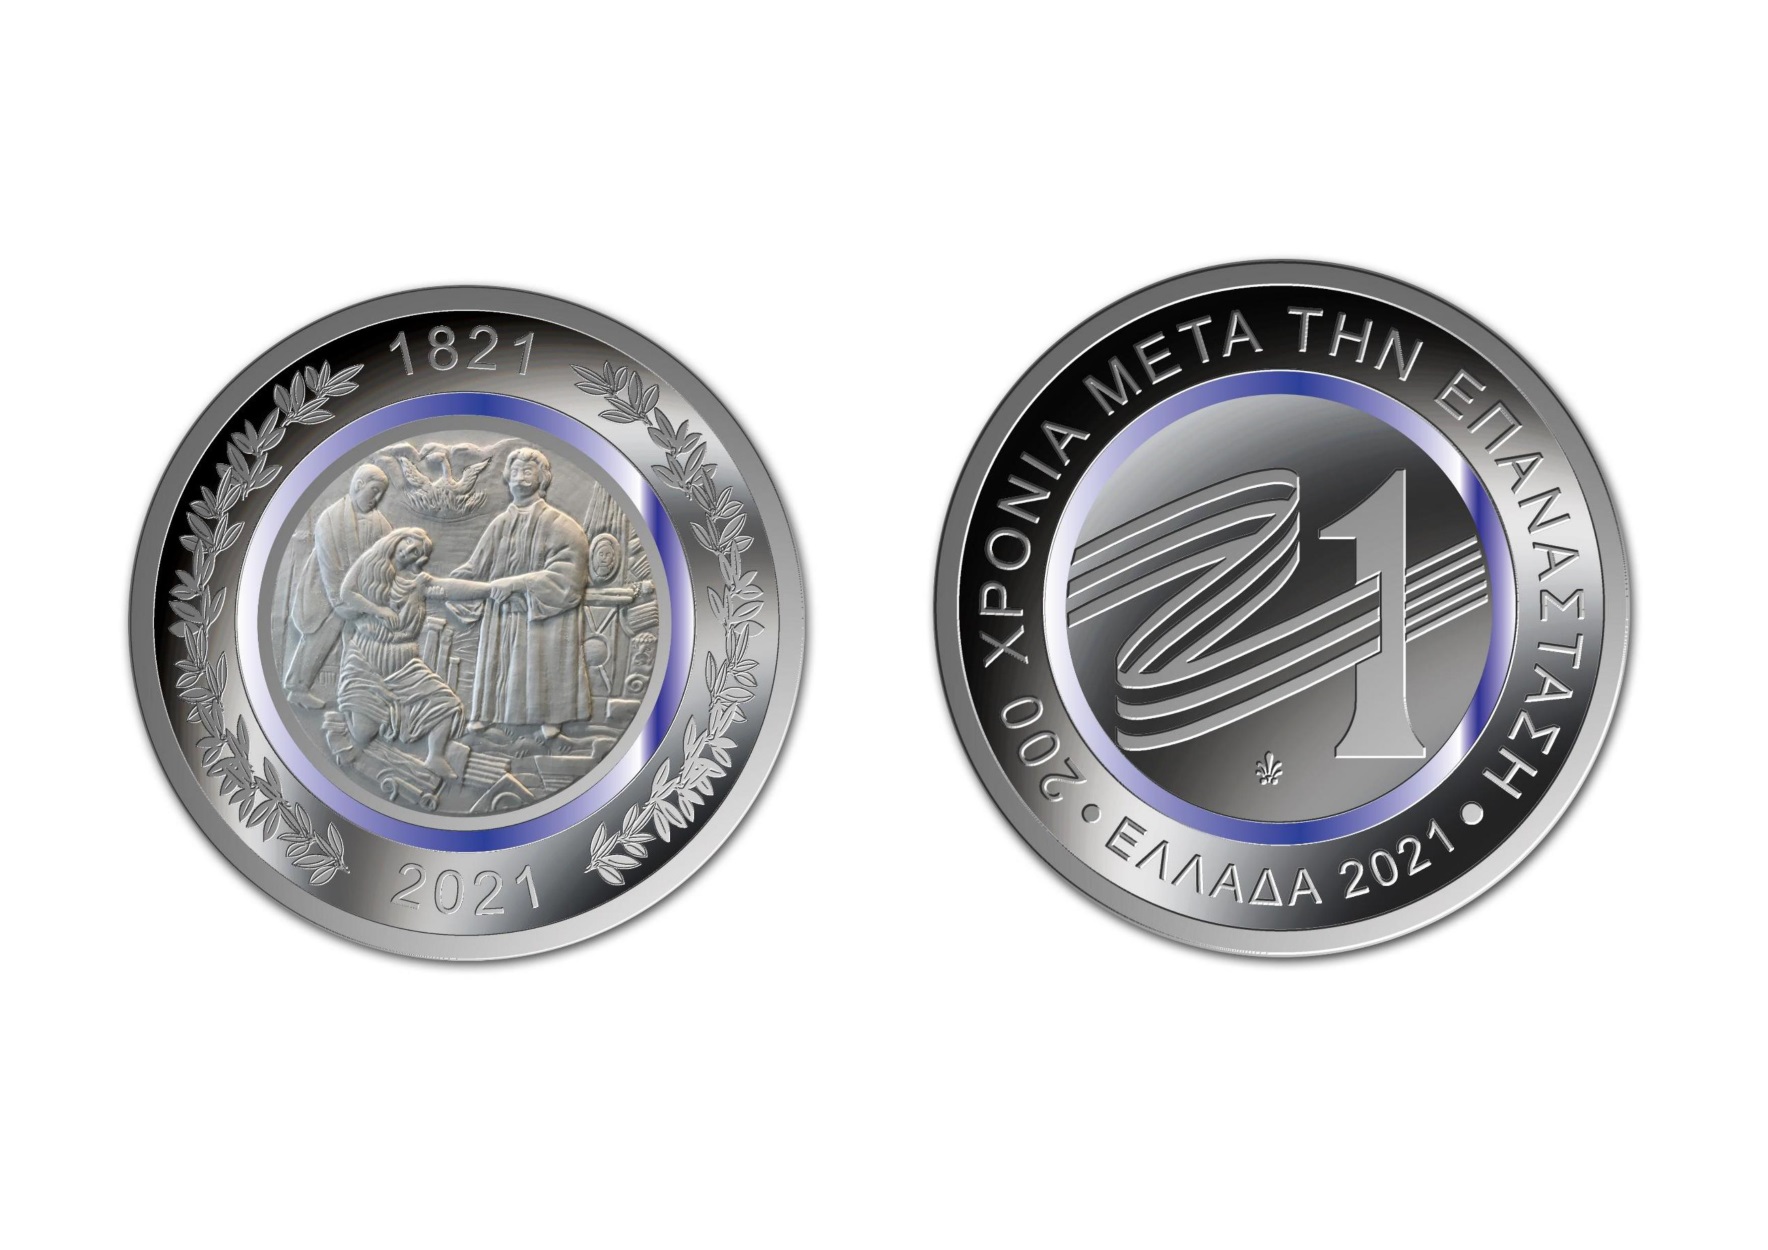 Το αναμνηστικό νόμισμα της 25ης Μαρτίου 2021 έδειξε η Αγγελοπούλου στην Σακελλαροπούλου (pics)